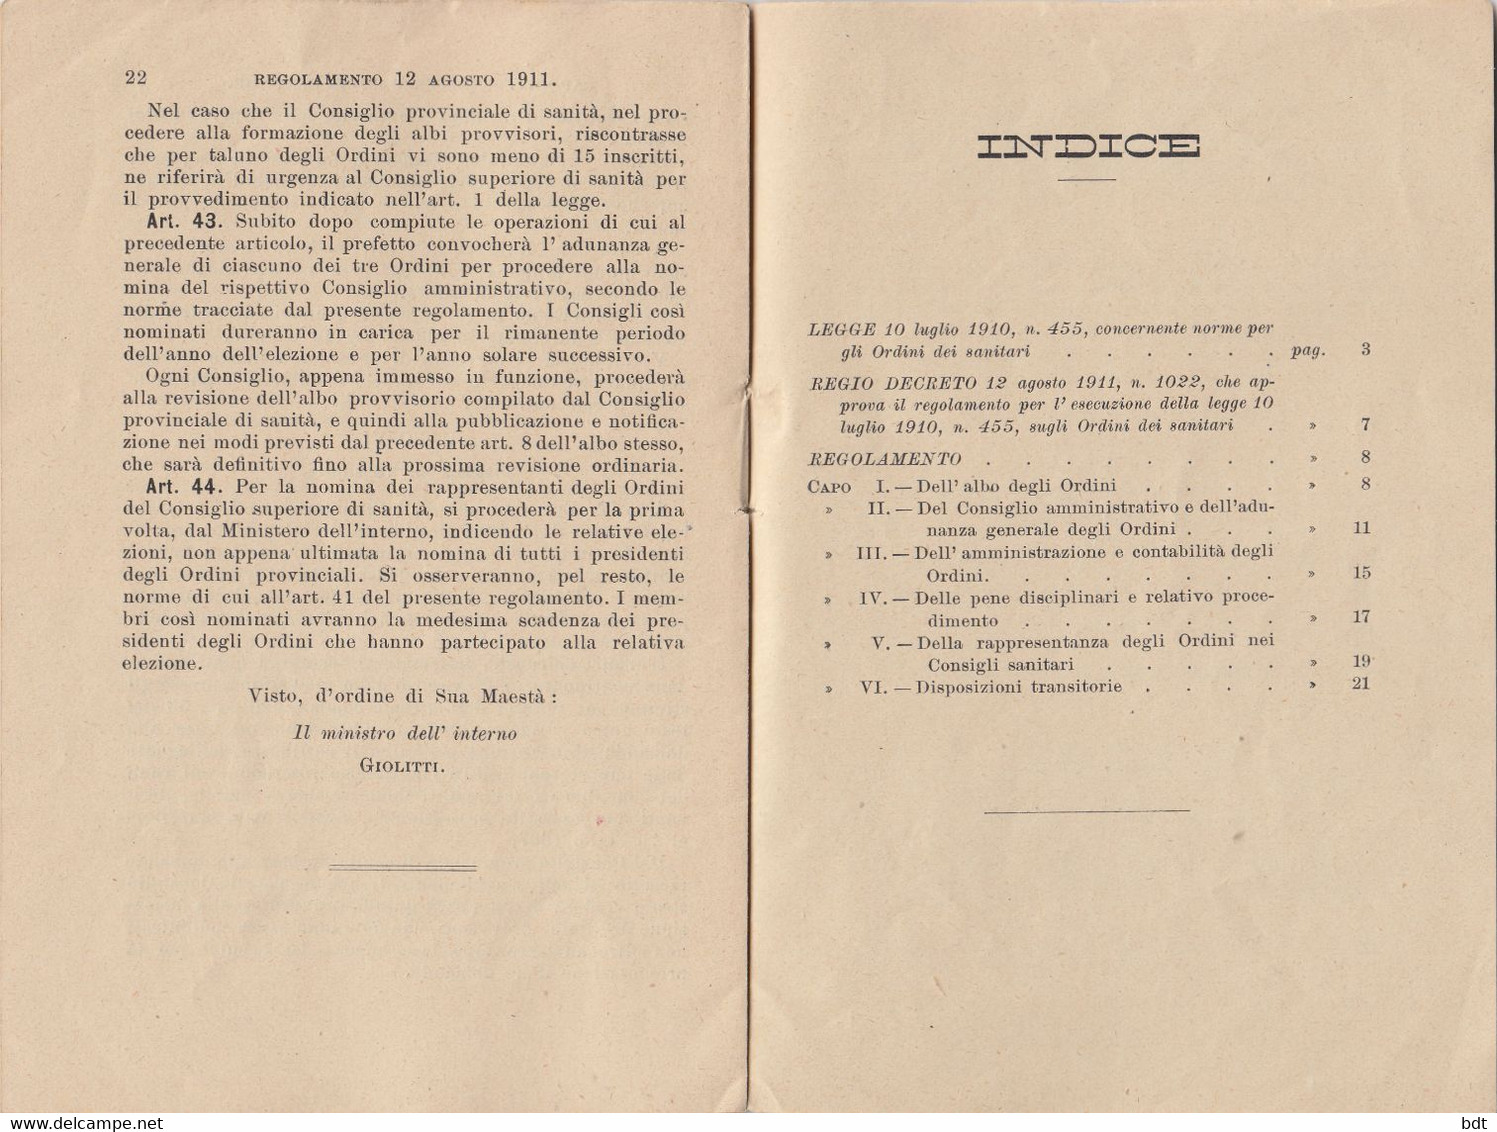 RC093 - 1910 LIBRO COMPLETO 23 PAGINE "LEGGE SUGLI ORDINI DEI SANITARI Del 10/7" - Medecine, Biology, Chemistry